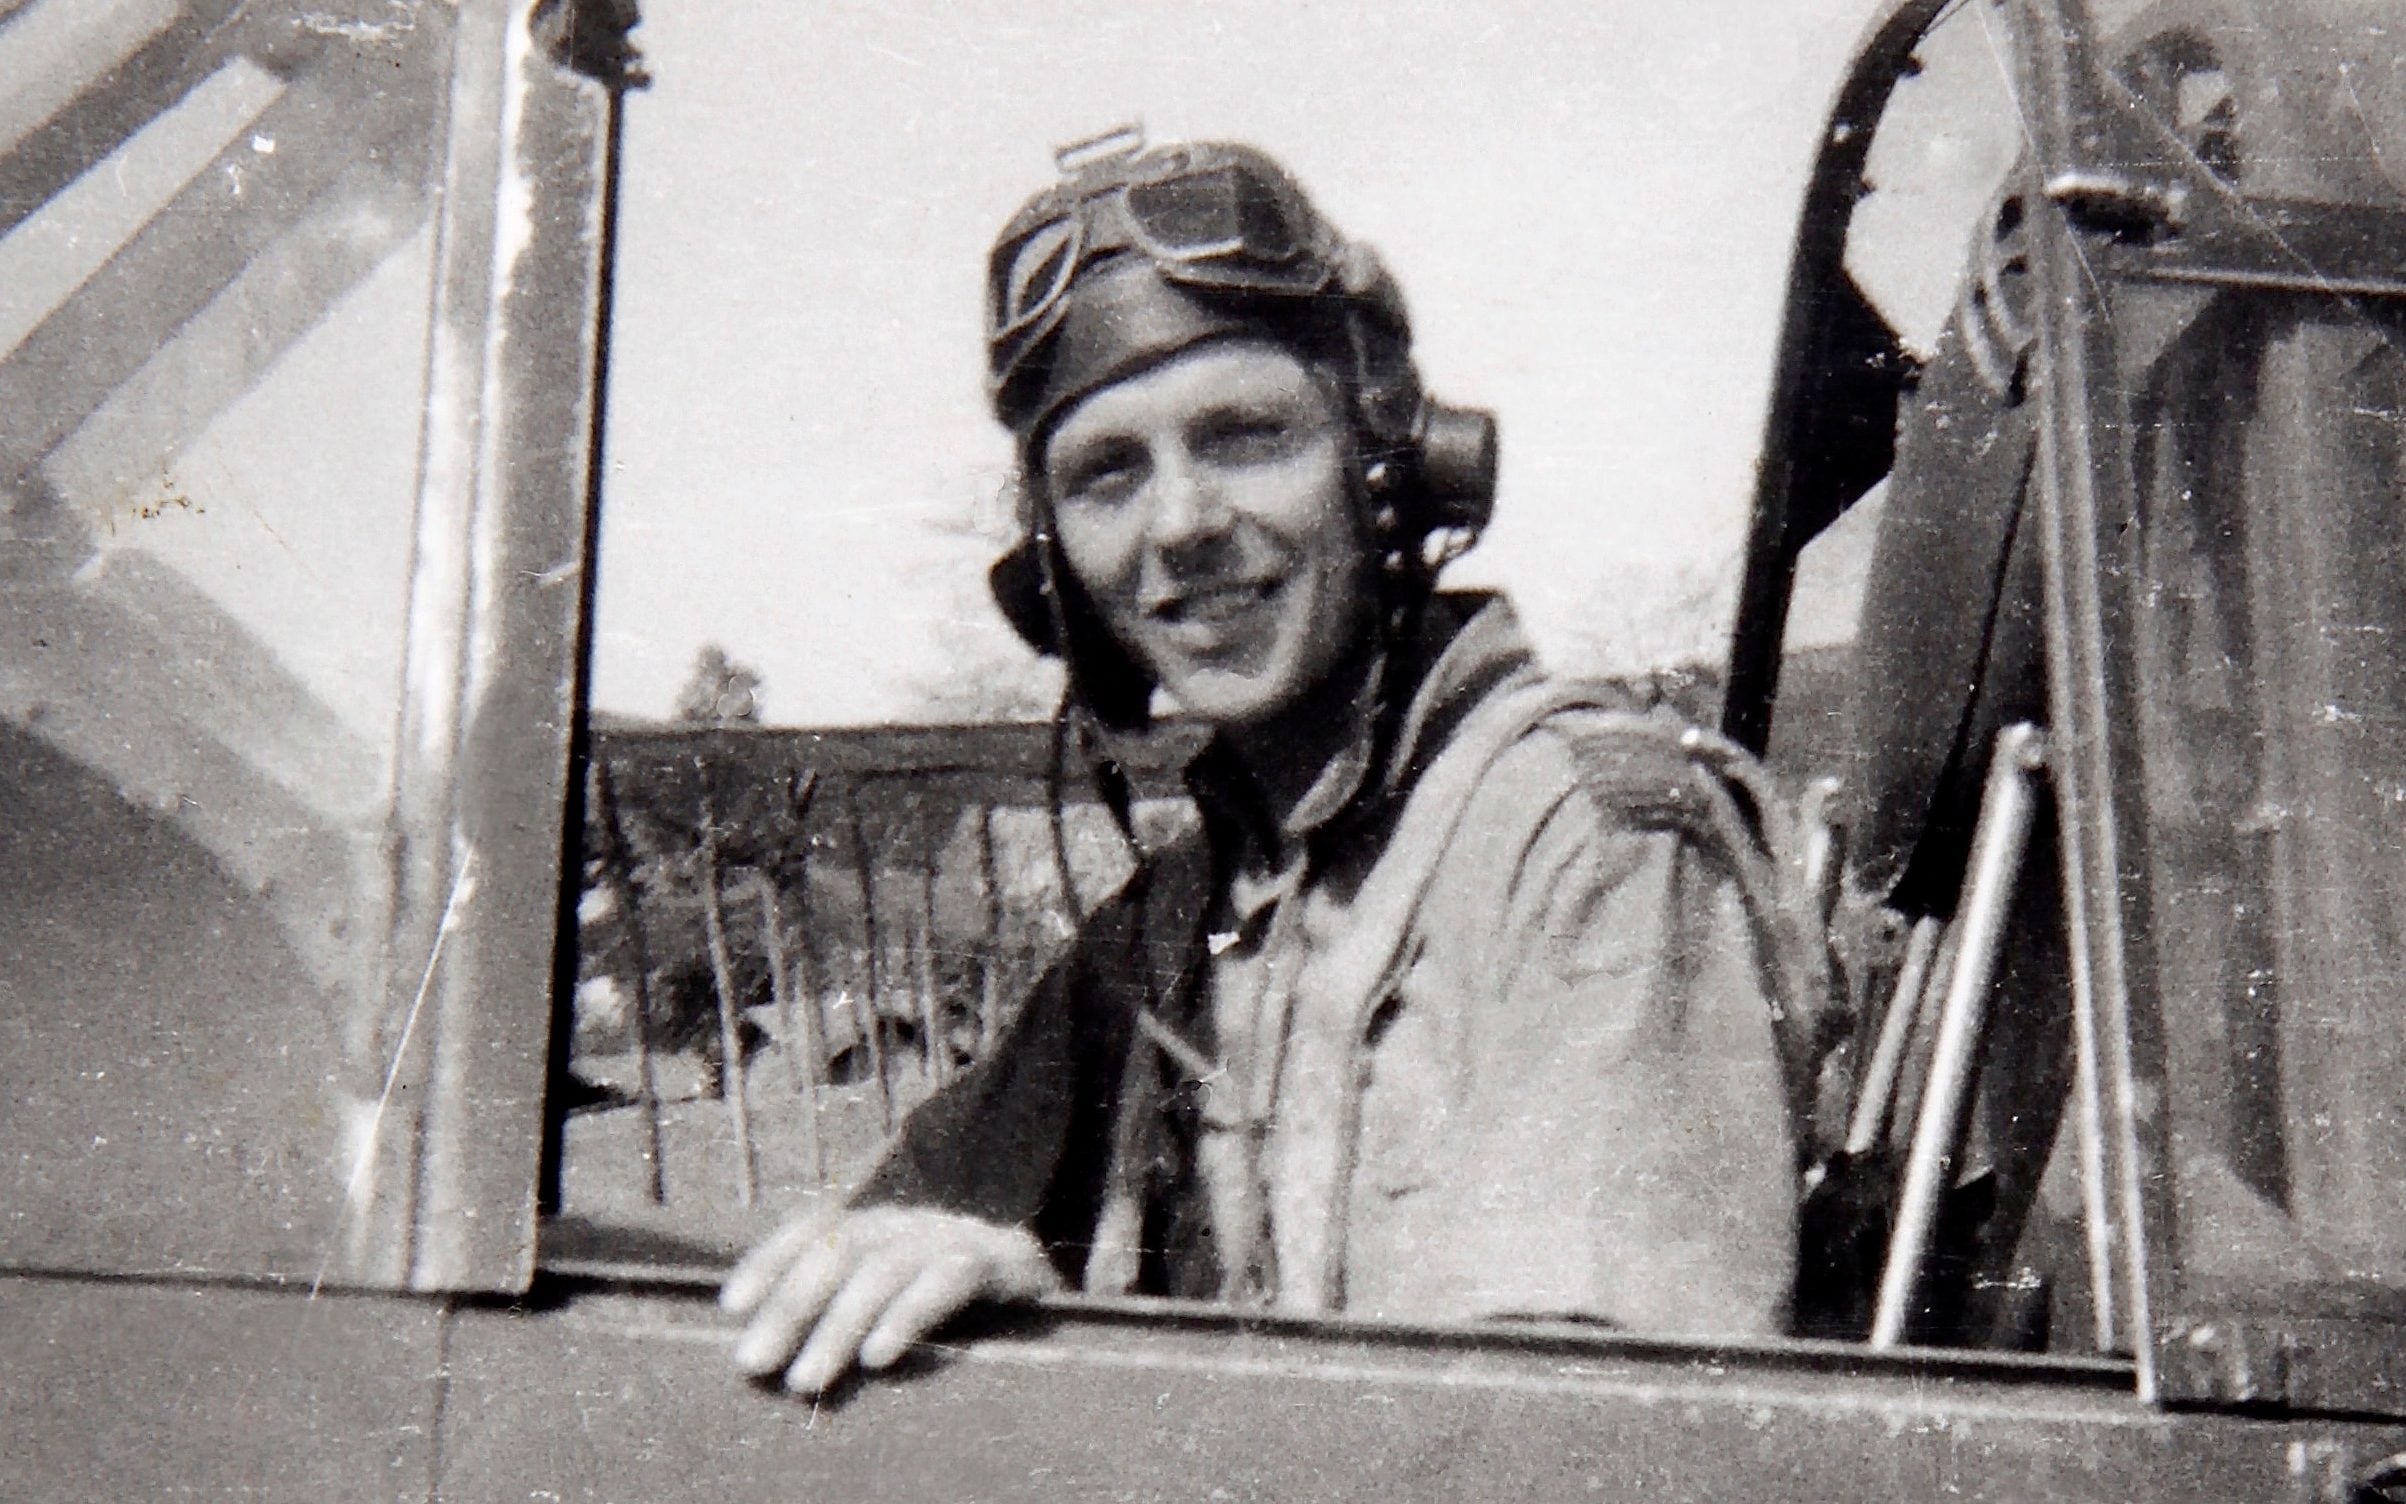 Wing Commander Arthur Gill